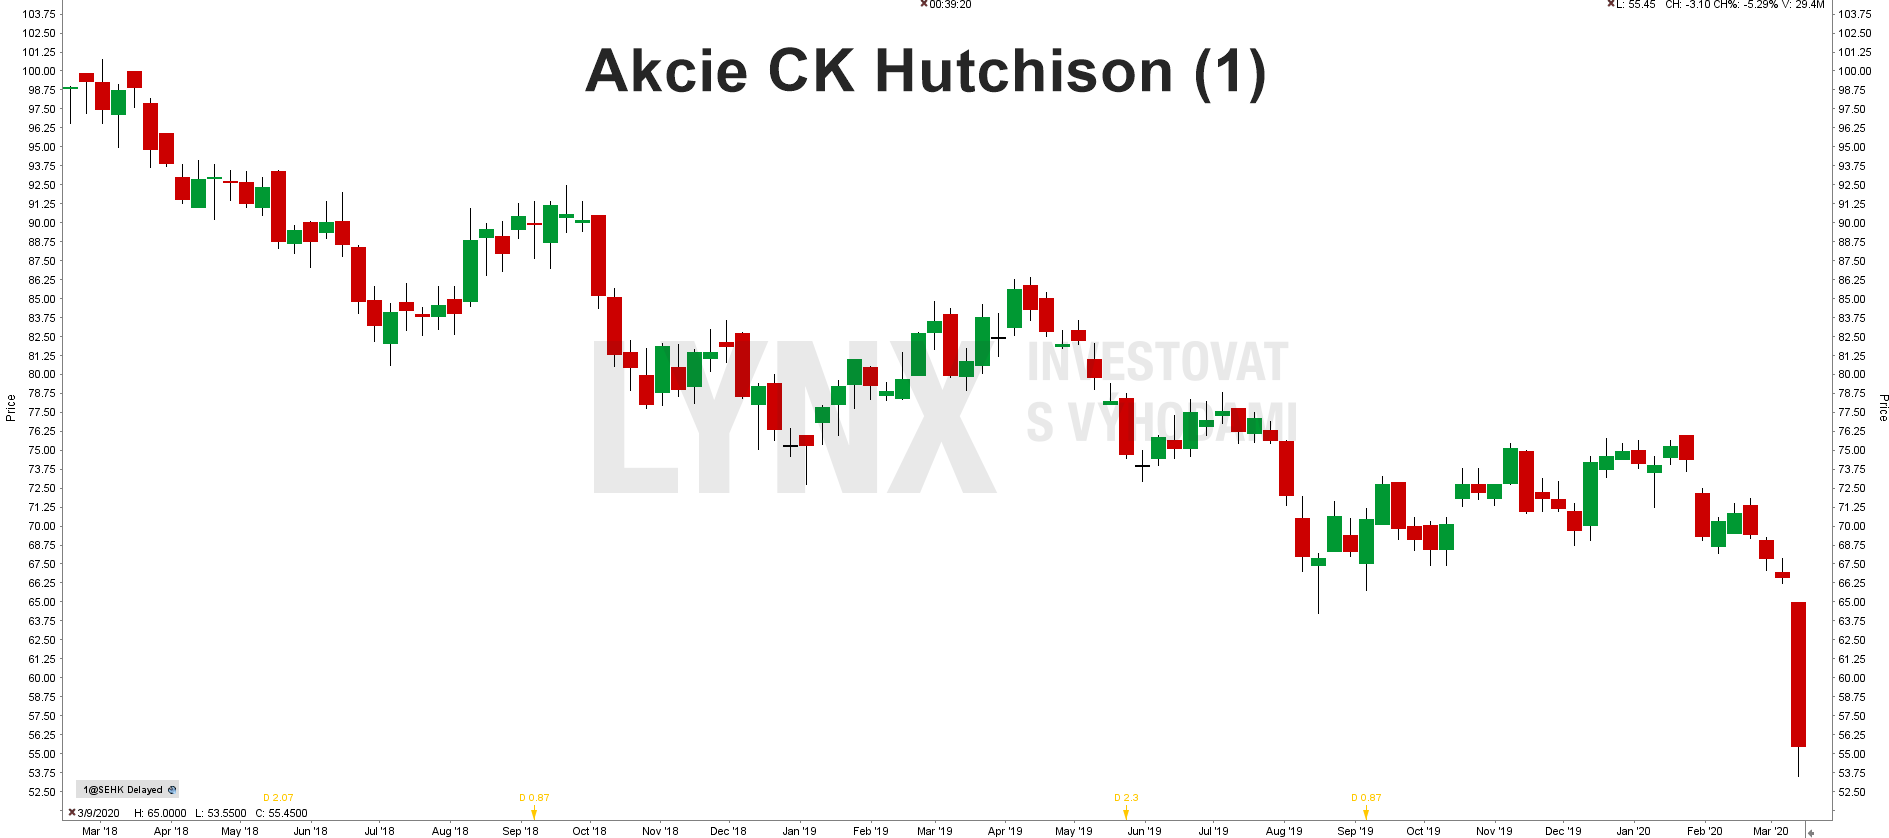 Akcie CK Hutchison